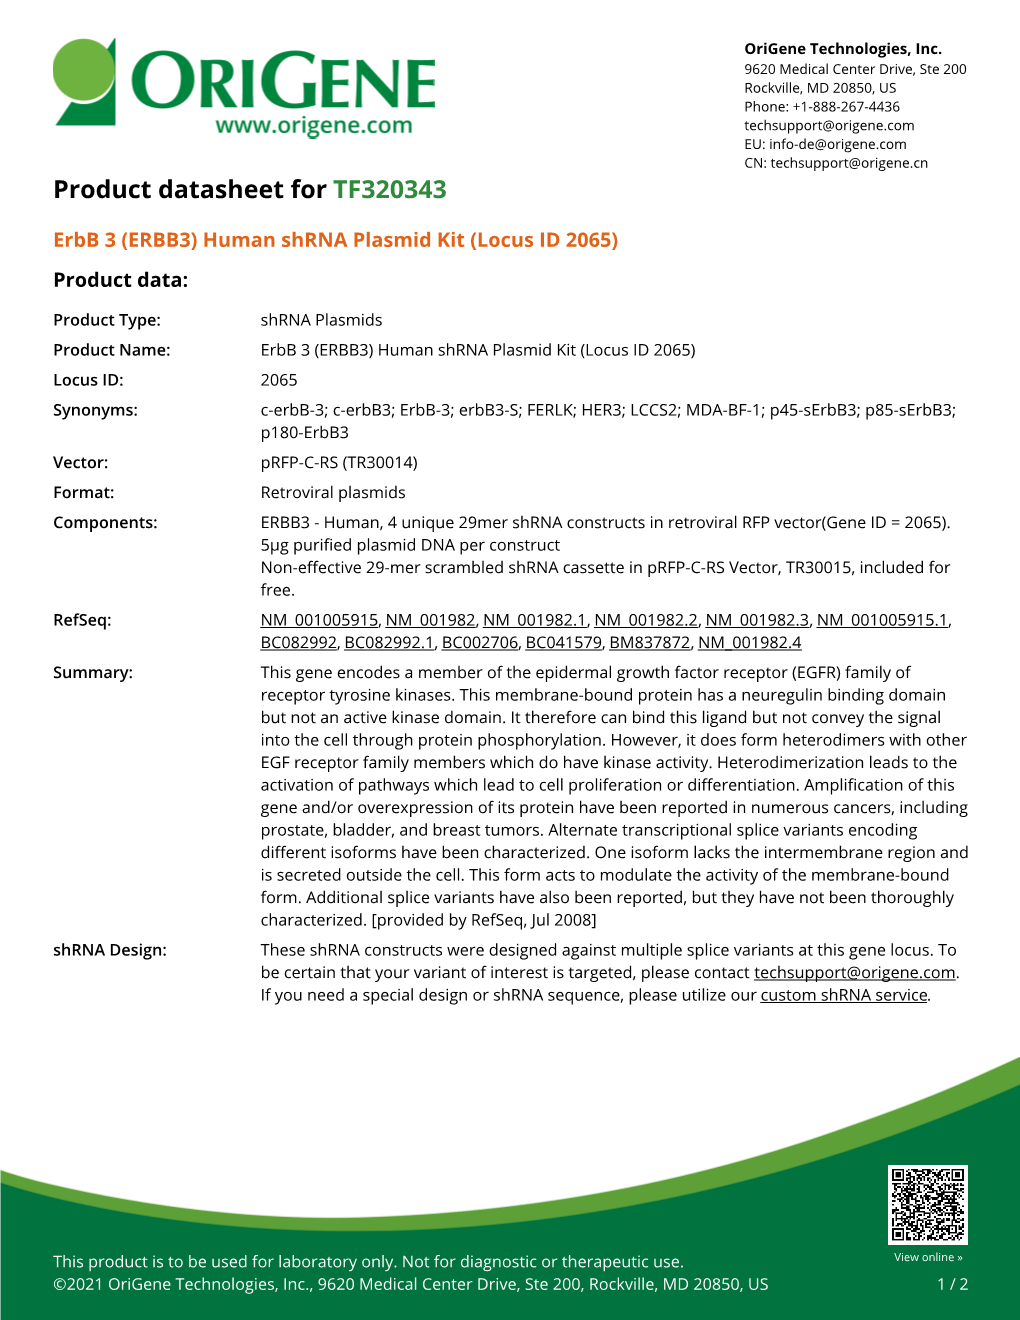 Erbb 3 (ERBB3) Human Shrna Plasmid Kit (Locus ID 2065) Product Data